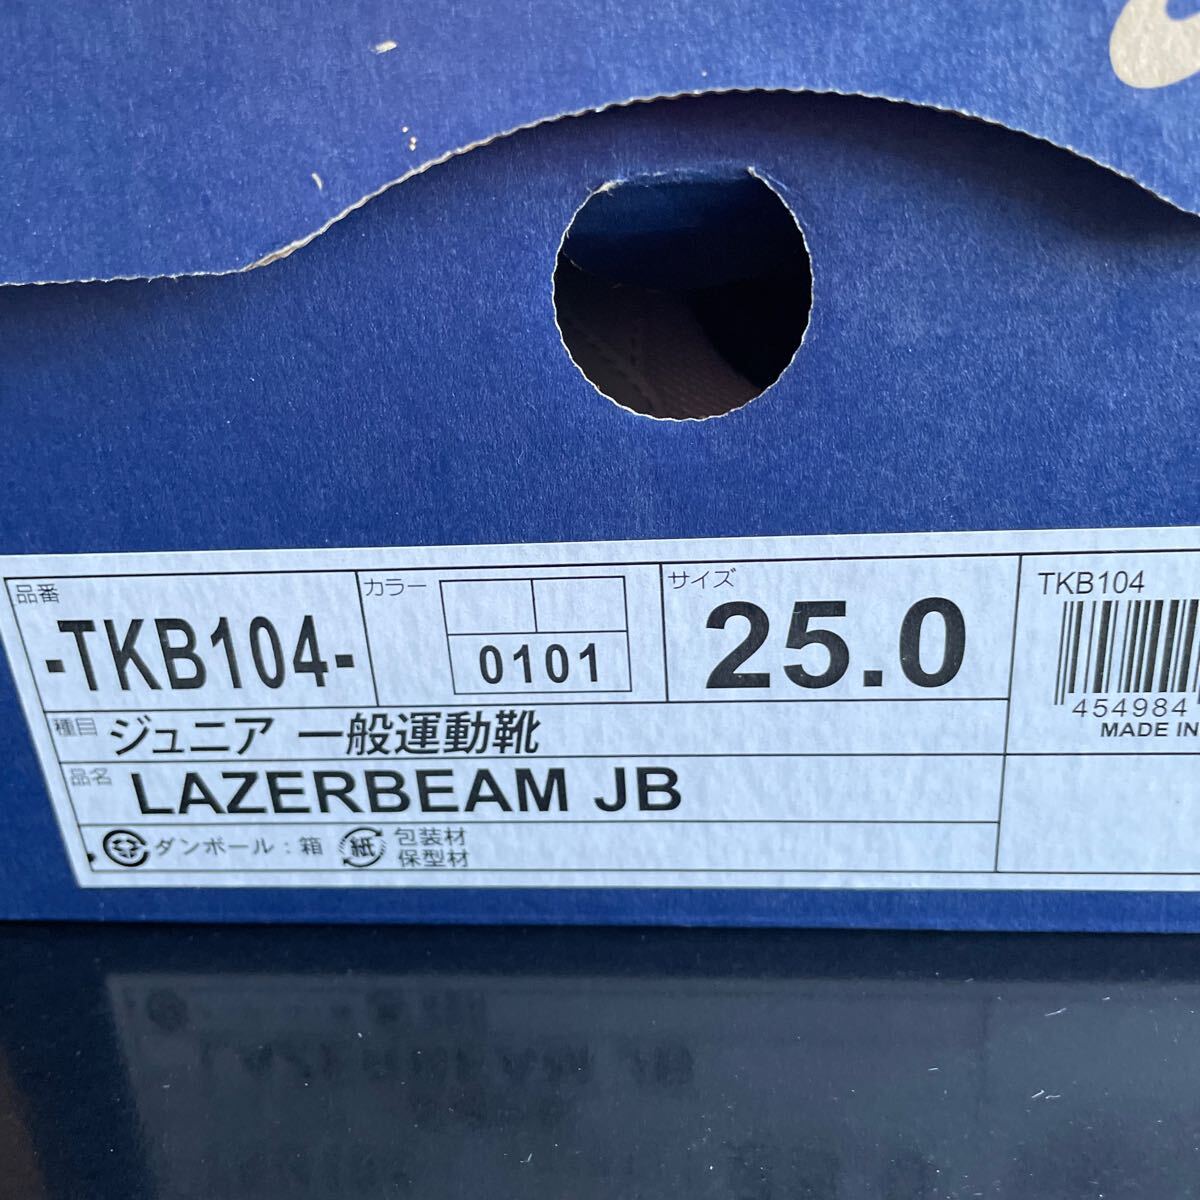  новый товар не использовался товар Asics Junior спортивная обувь LAZERBEAM JB 25.0 TKB104